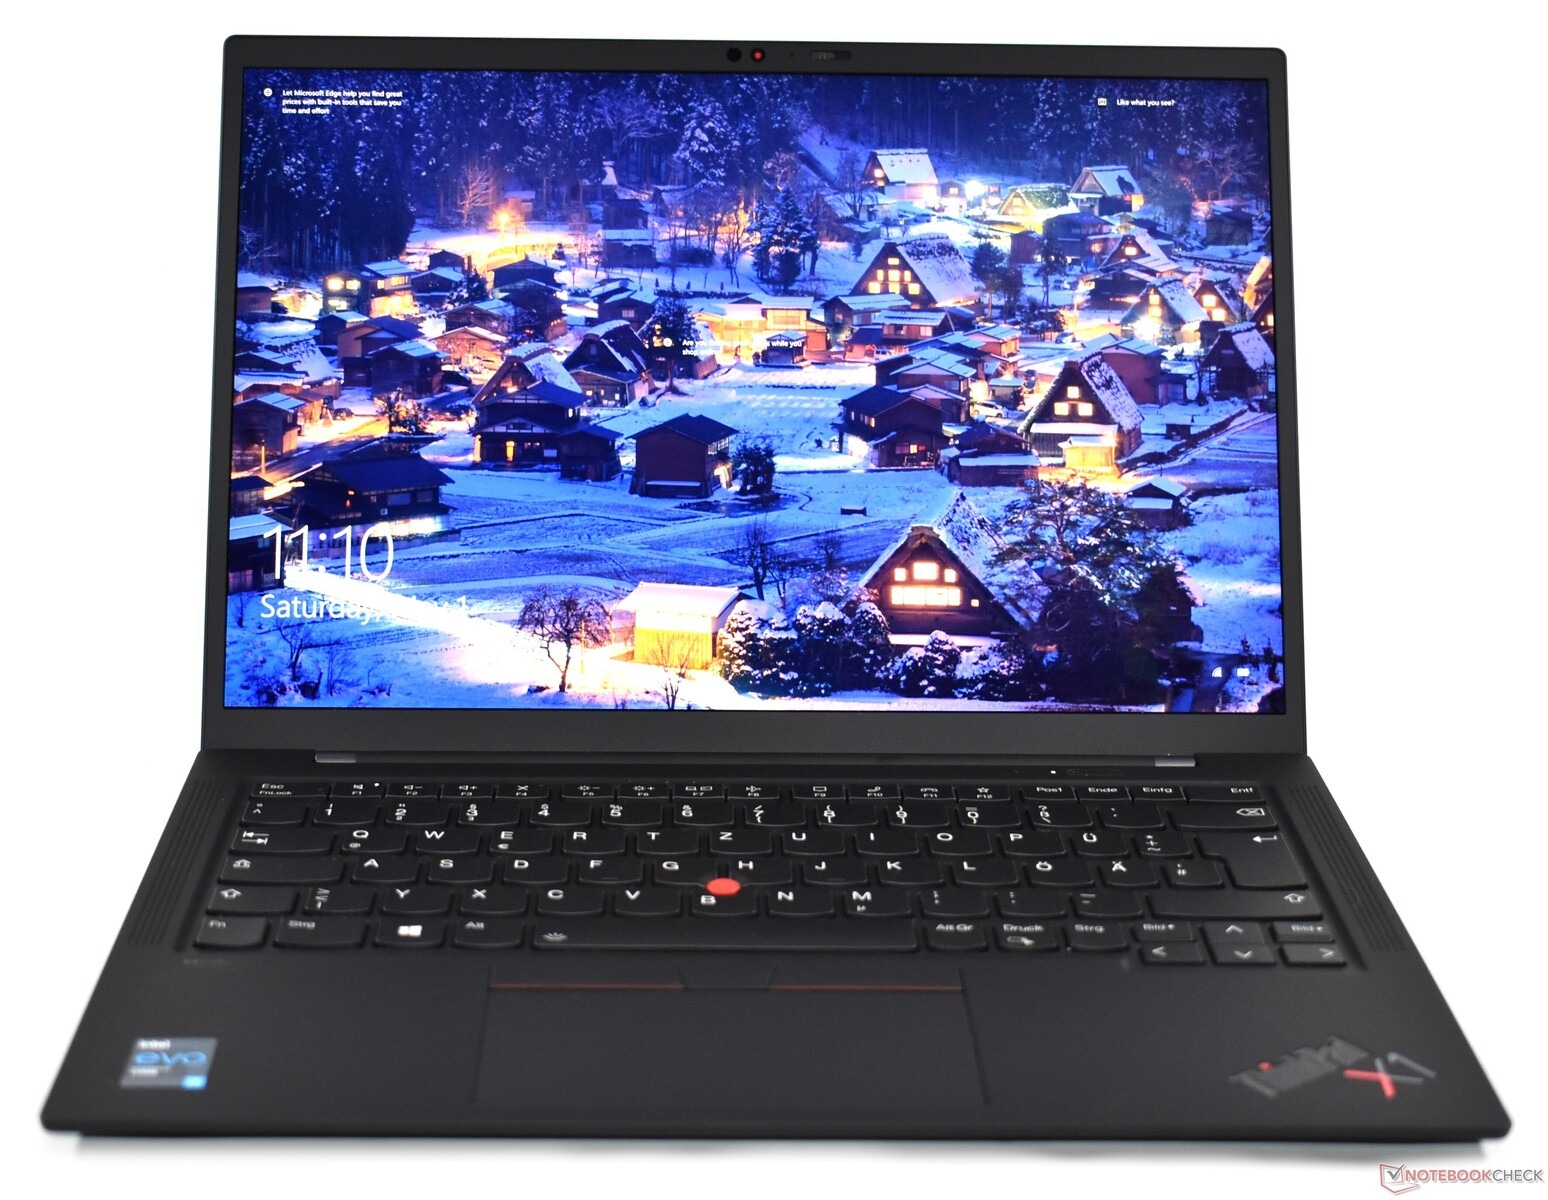 Giá bán Laptop Lenovo ThinkPad X1 Carbon G9 chính hãng Mỹ | Đánh giá laptop Lenovo  ThinkPad X1 Carbon thế hệ 9: Nâng cấp lớn 16:10 với Intel Tiger Lake -  BigTOP